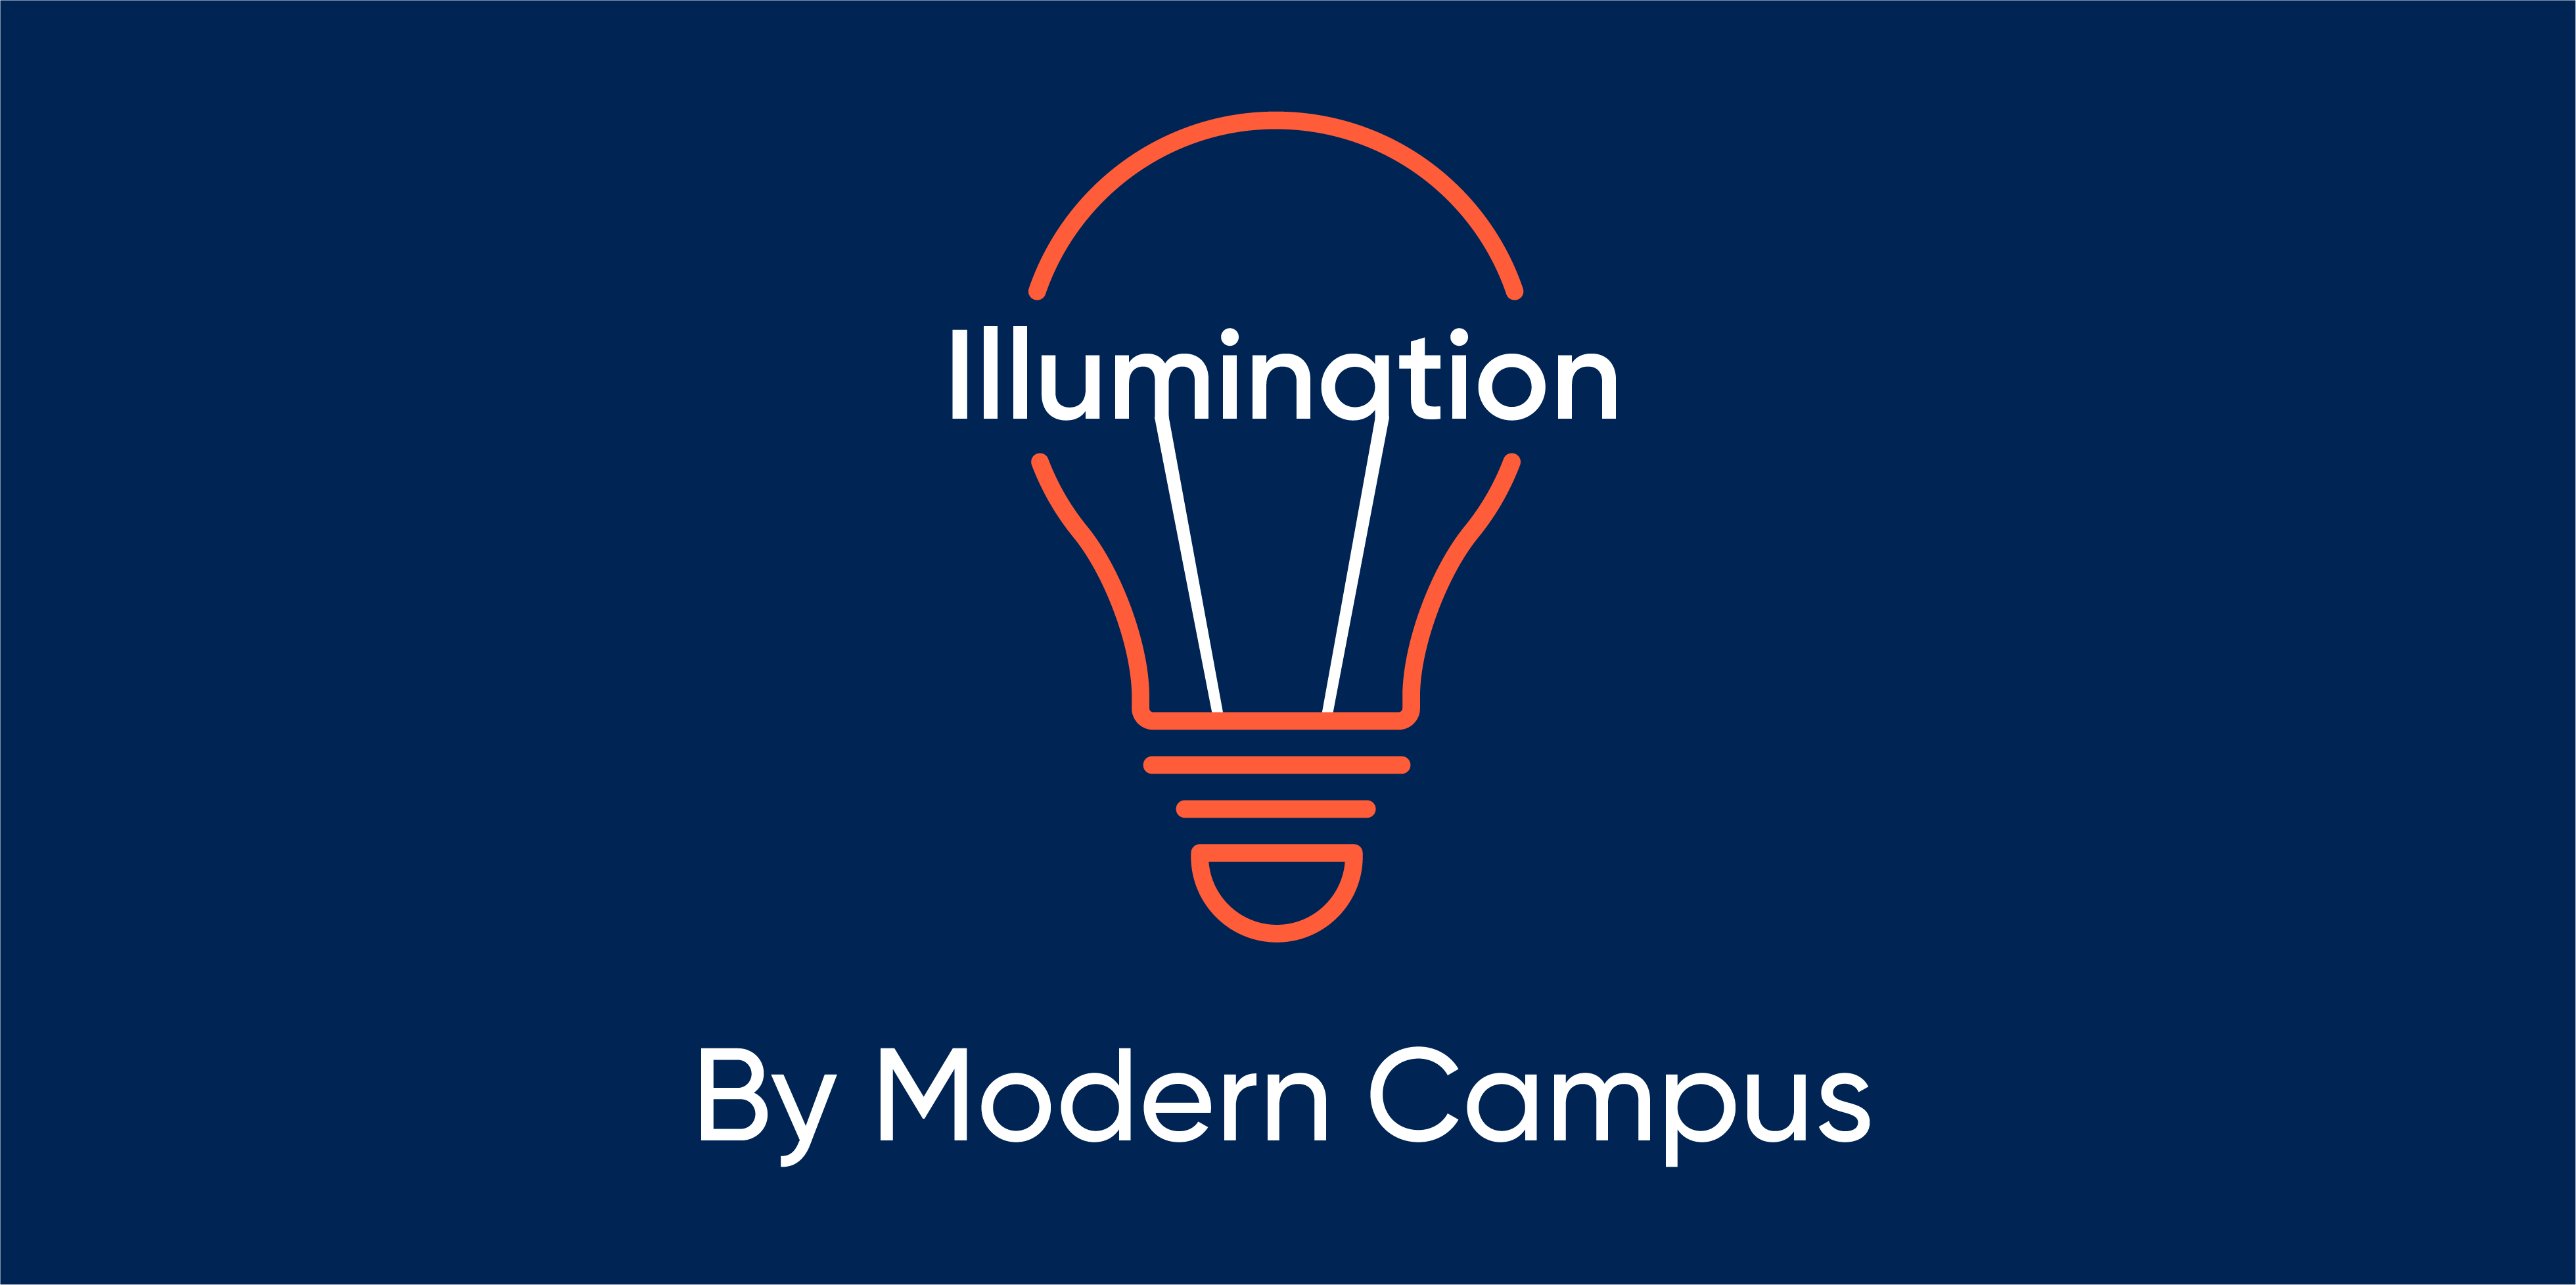 Episode 99: Illumination by Modern Campus